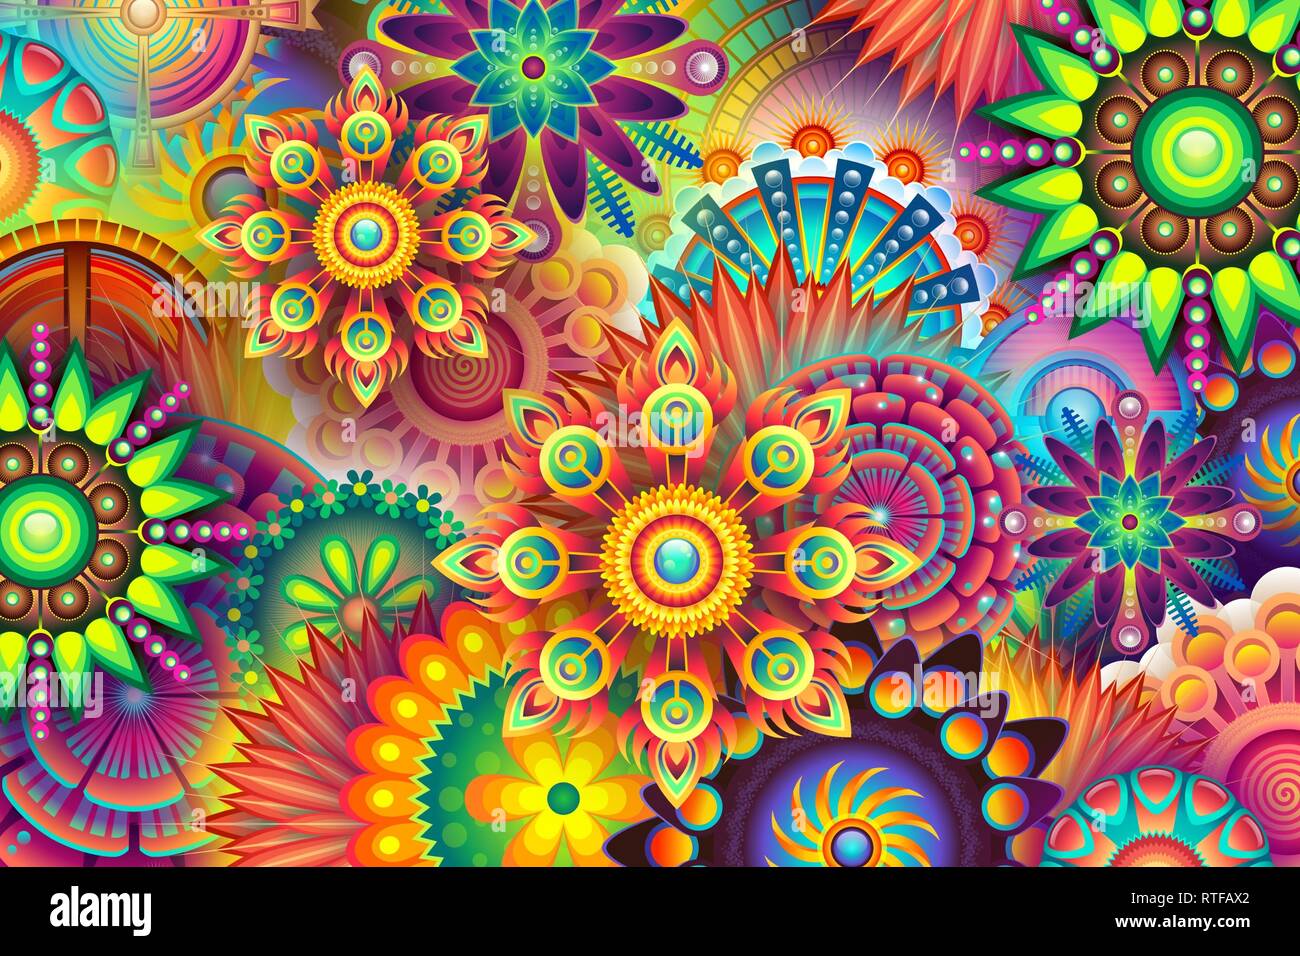 Farbenfrohe abstrakte Kunst schöne Bilder Stockfoto